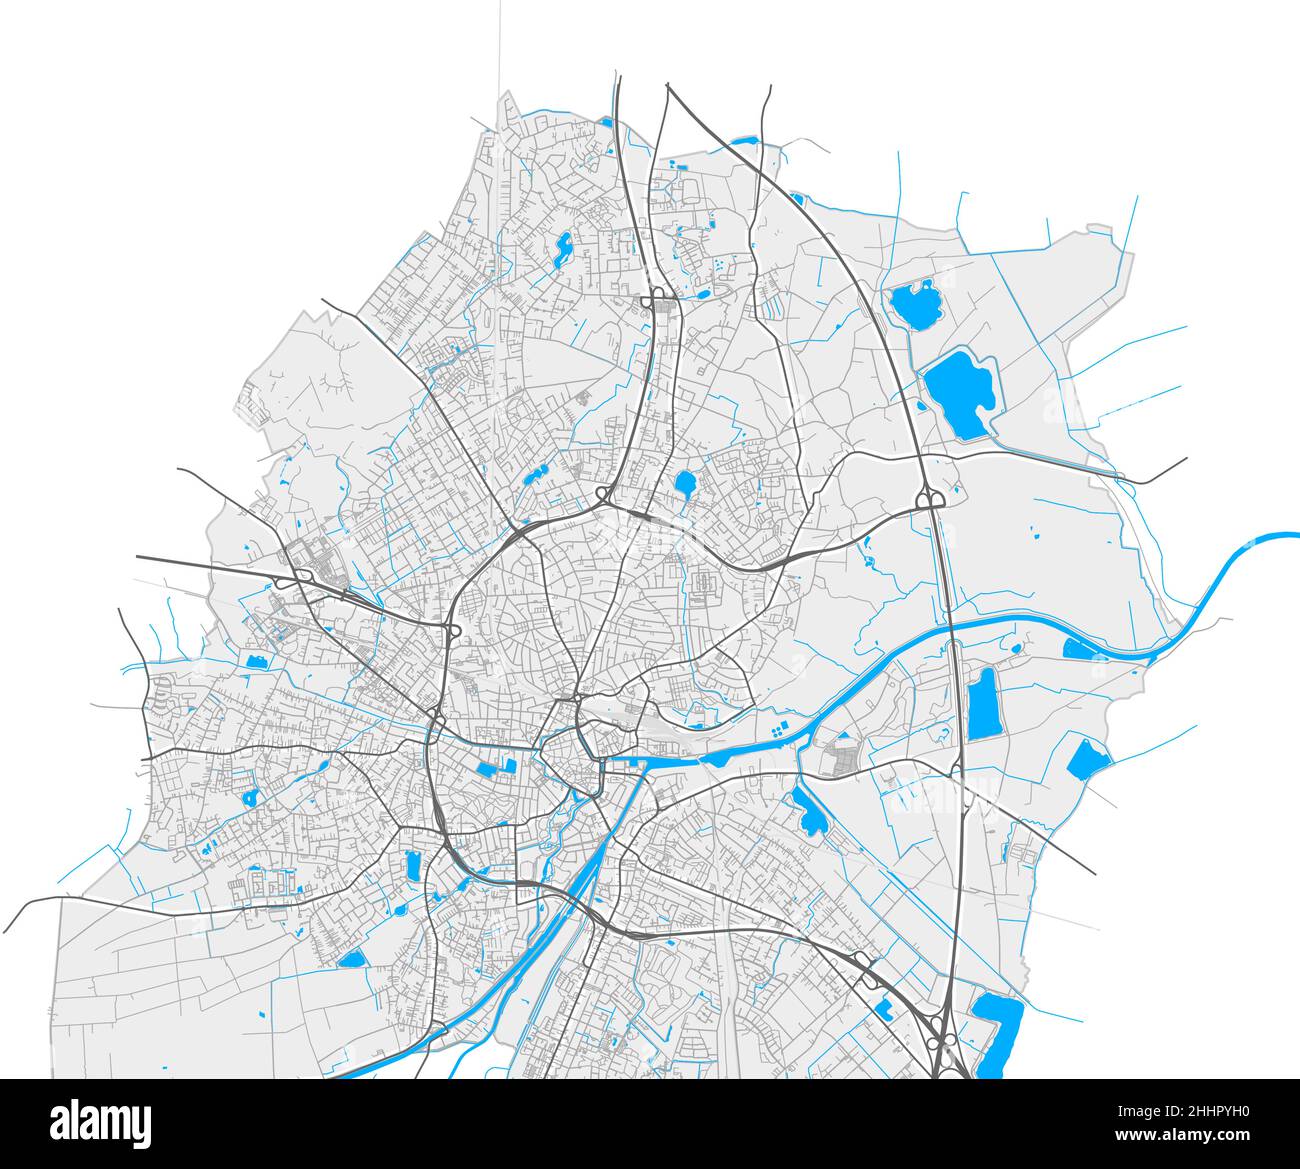 Oldenburg, Niedersachsen, Deutschland hochauflösende Vektorkarte mit Stadtgrenzen und editierbaren Pfaden. Weiße Umrisse für Hauptstraßen. Viele detaillierte Pfad Stock Vektor